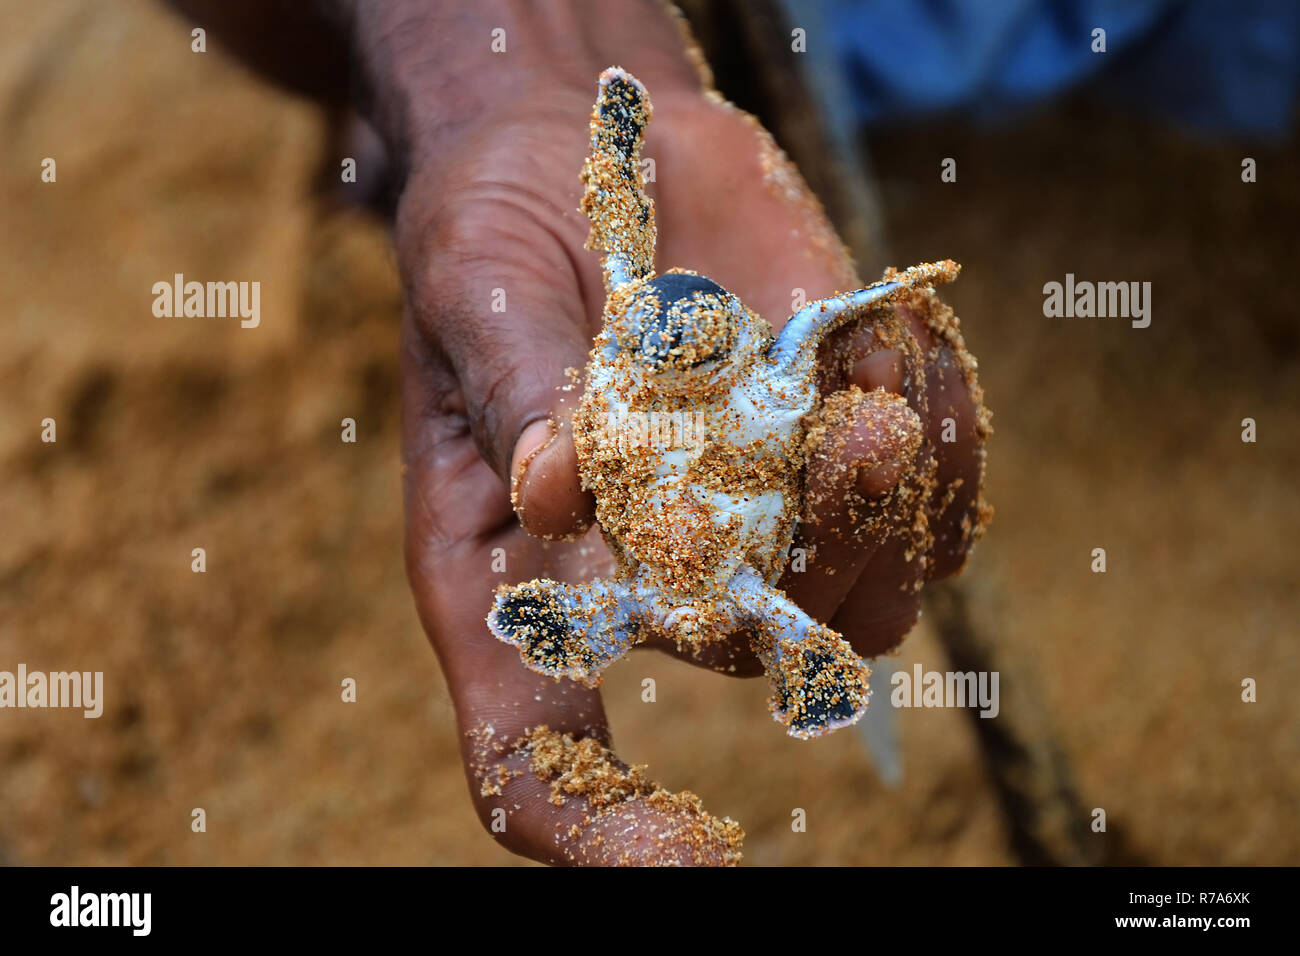 Menschen Finger weiße Frau, die ein Baby Schildkröte, Speichern von Tieren, vertrauensvolle Peoplein die Meeresschildkröten Conservation Research Projekt in Bentota, Sri Lanka. Stockfoto